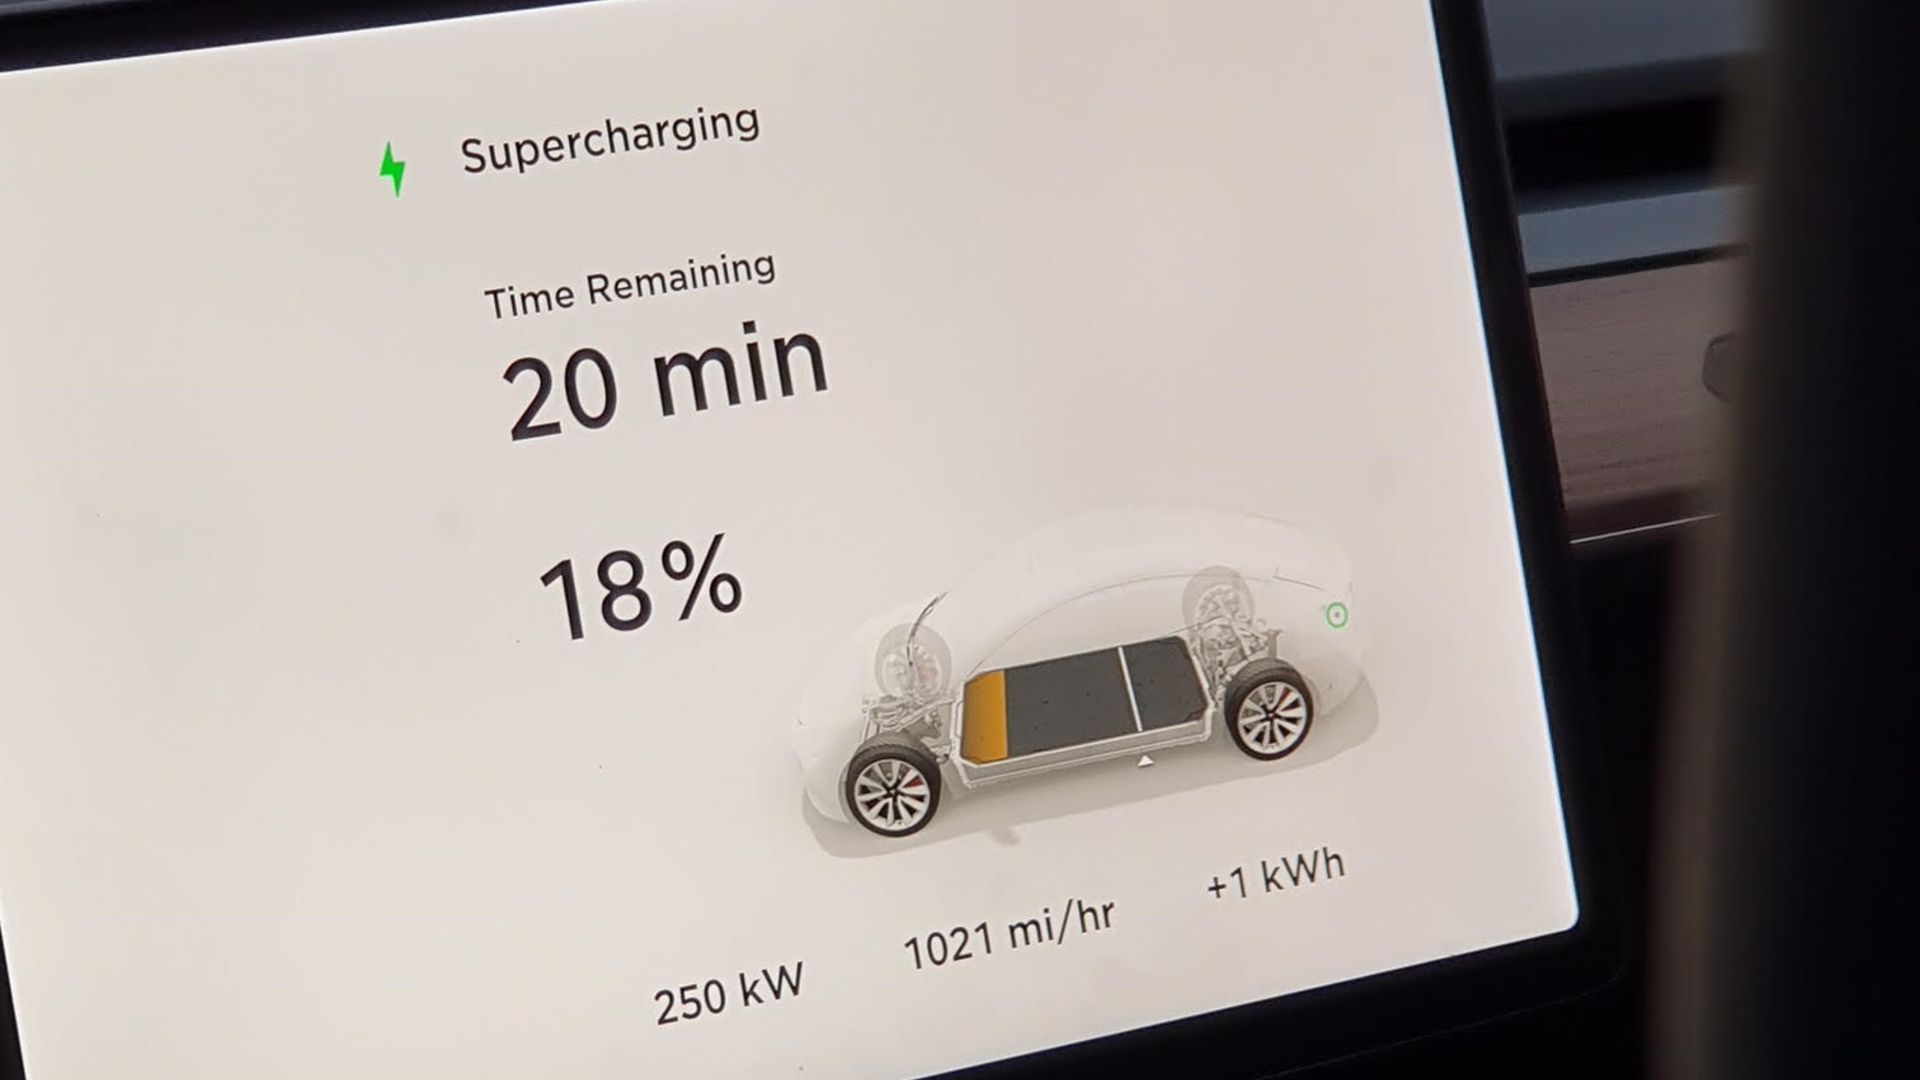 Tesla V3 supercharger in London